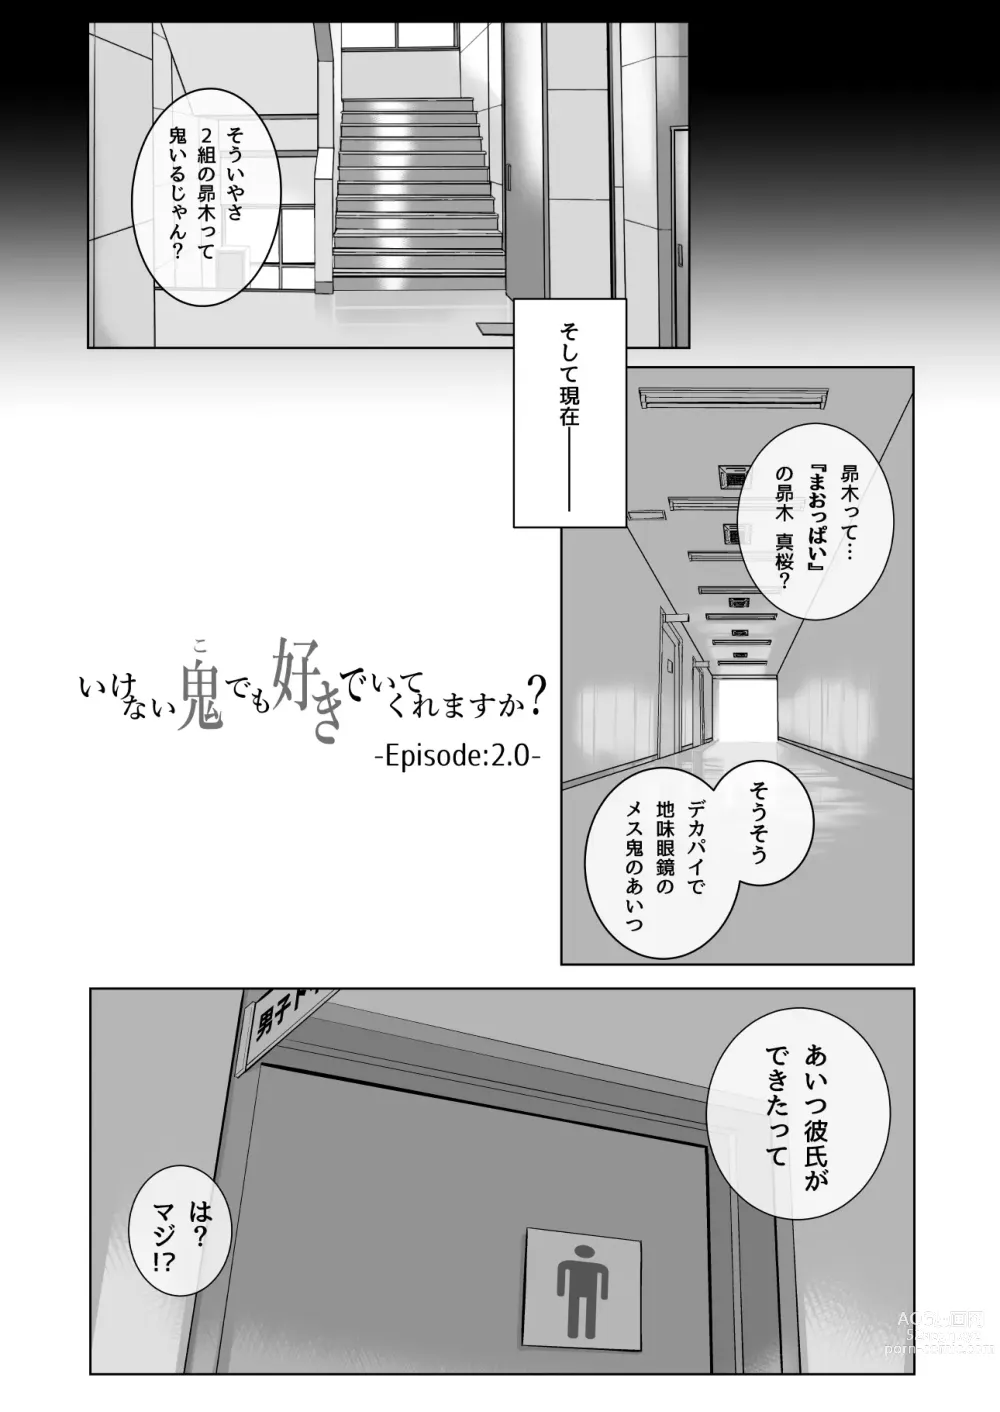 Page 7 of doujinshi Ikenai oni (ko) demo suki de ite kuremasu ka? 2. 0